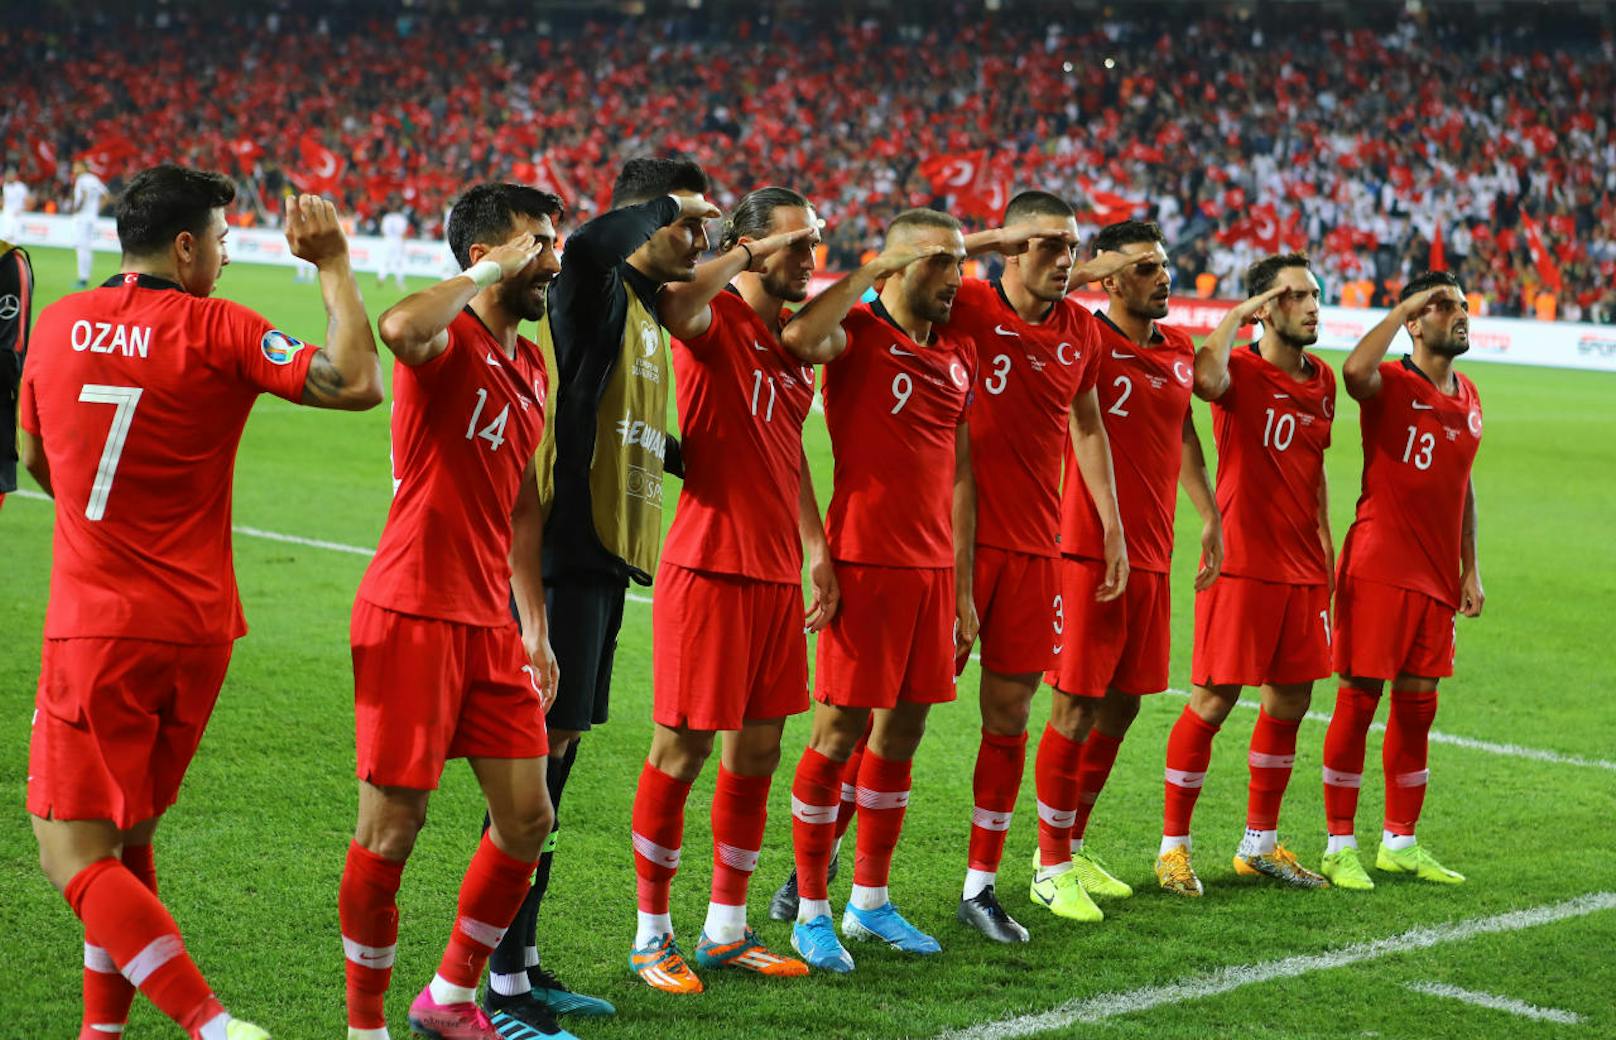 Beim 1:0-Erfolg in der EM-Qualifikation gegen Albanien setzten die türkischen Teamspieler ein mehr als umstrittenes Zeichen. Der Treffer von Cenk Tosun wurde in der 90. Minute mit einem Salut in Richtung der türkischen Truppen in Nordsyrien gefeiert. Der Aufschrei war groß. 